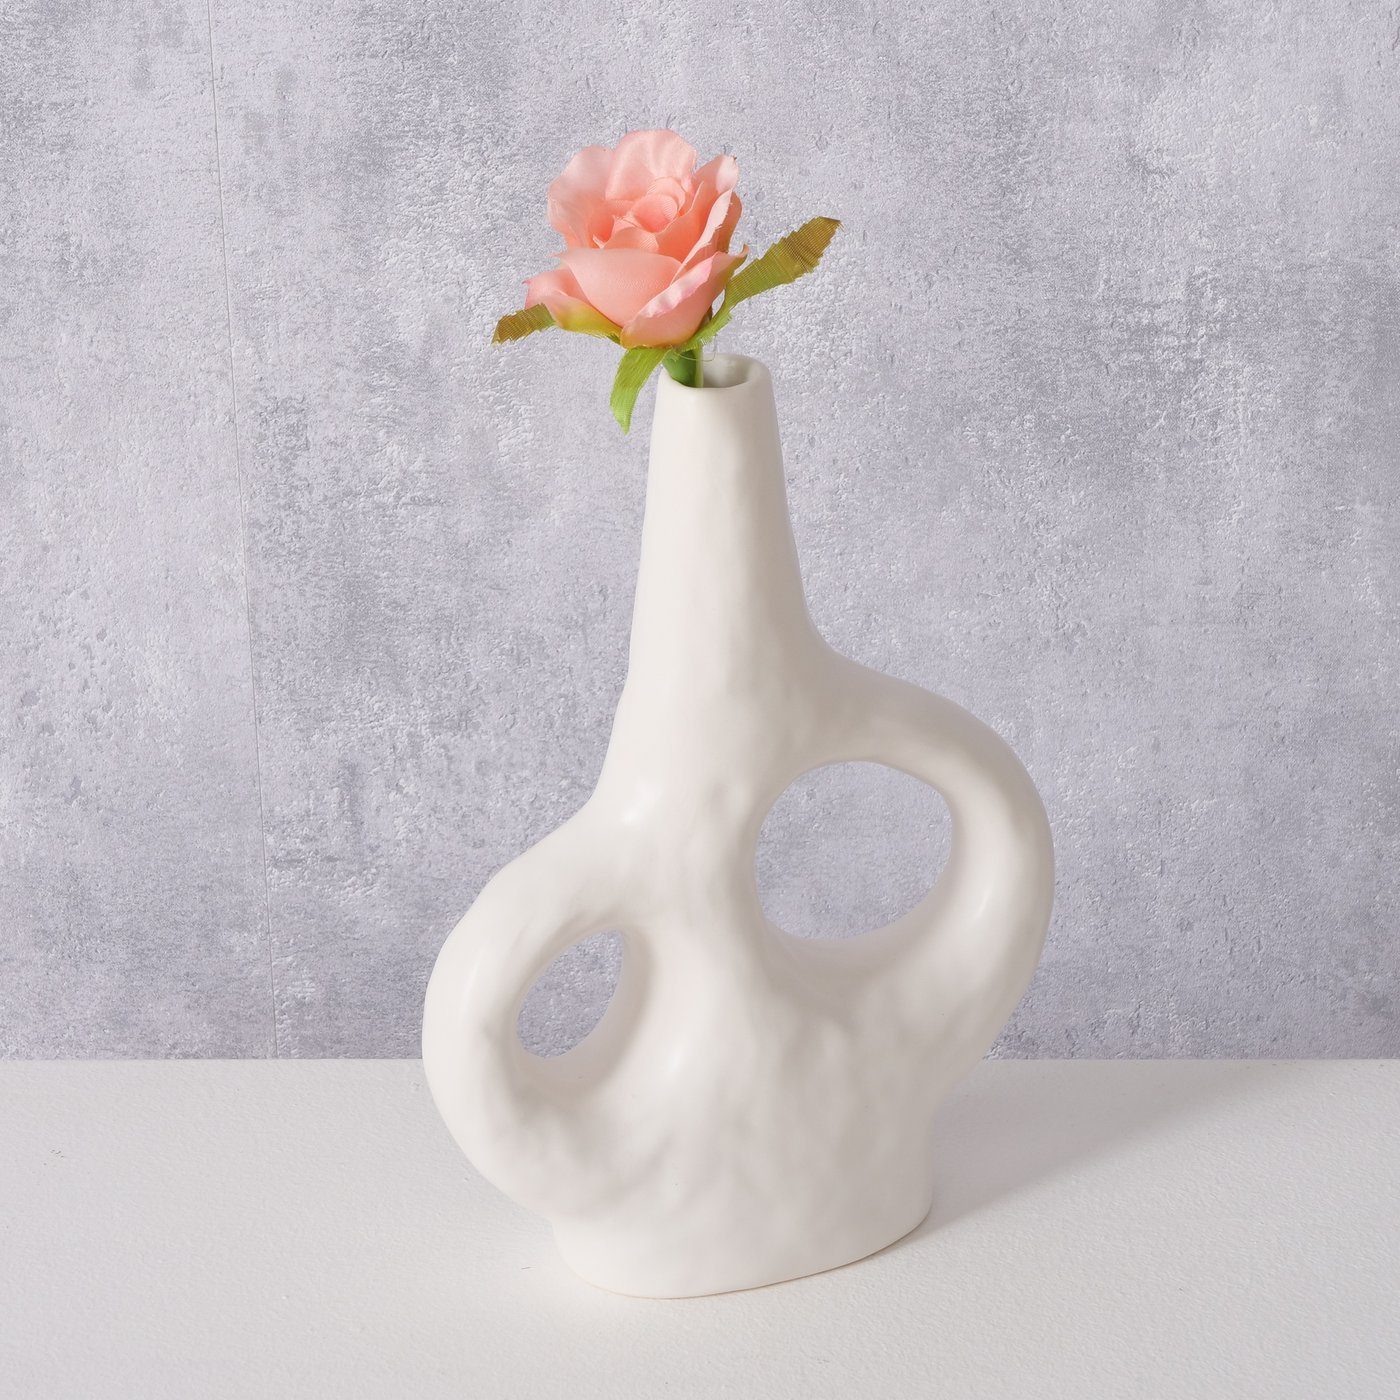 BOLTZE Dekovase "Telony" aus Keramik (Steingut) in weiß, Blumenvase Vase